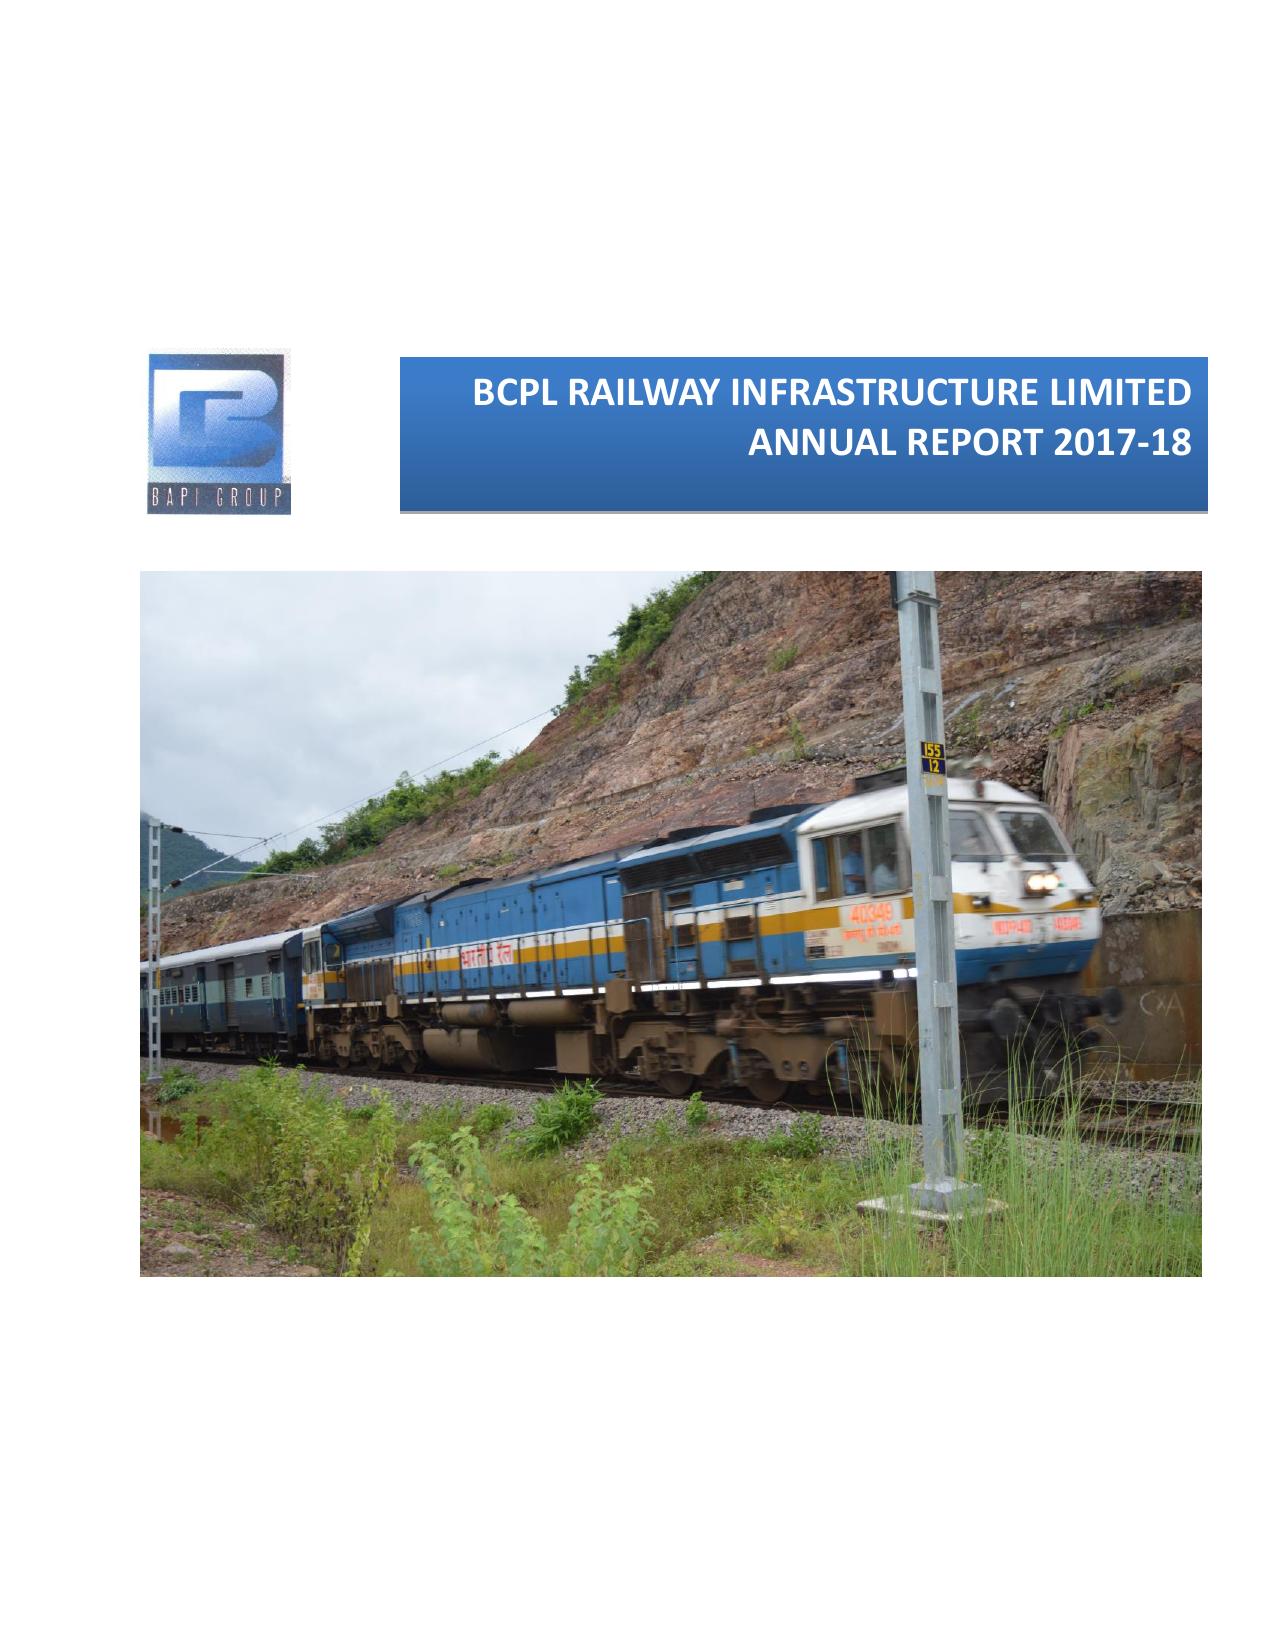 BCRIL Annual Report